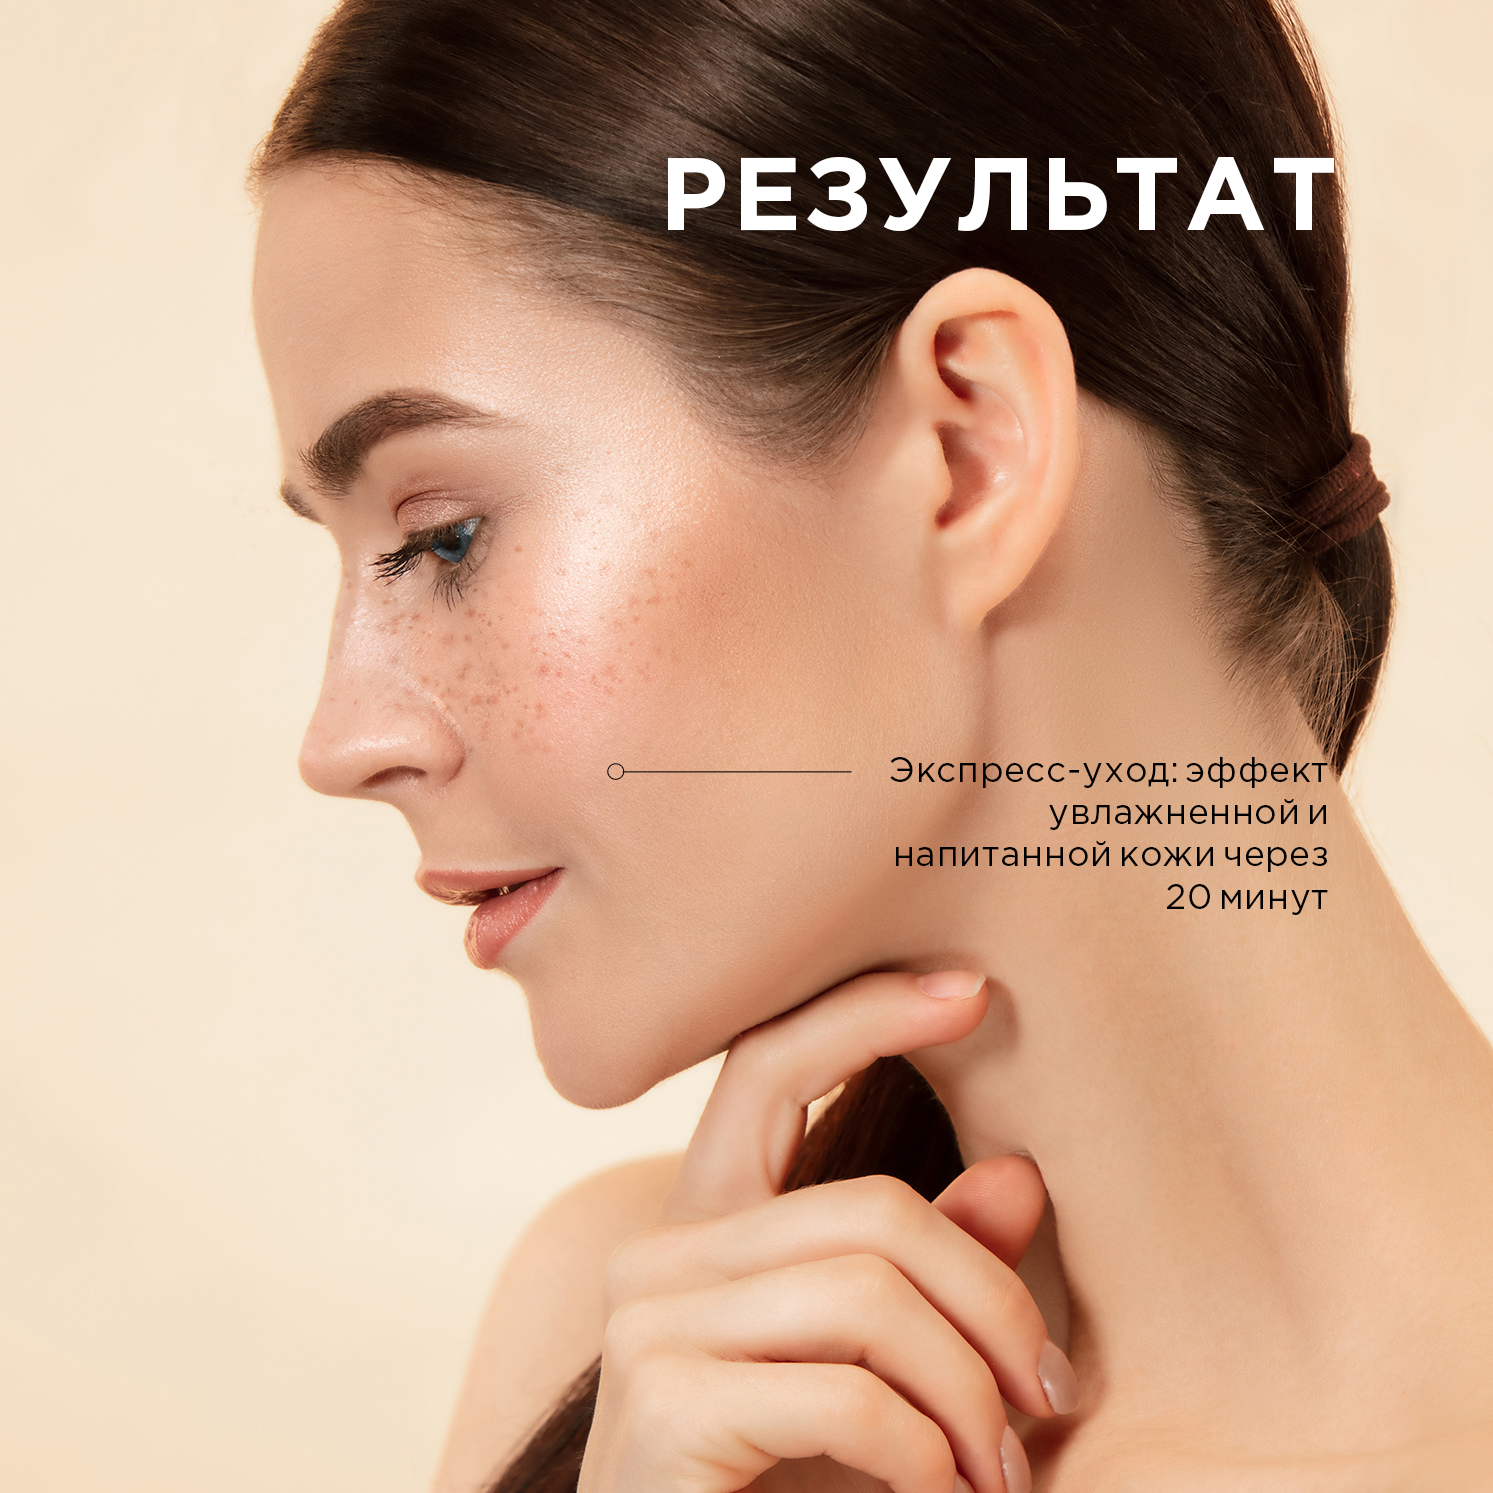 Питательная тканевая маска RICH FACE MASK, Letique Cosmetics